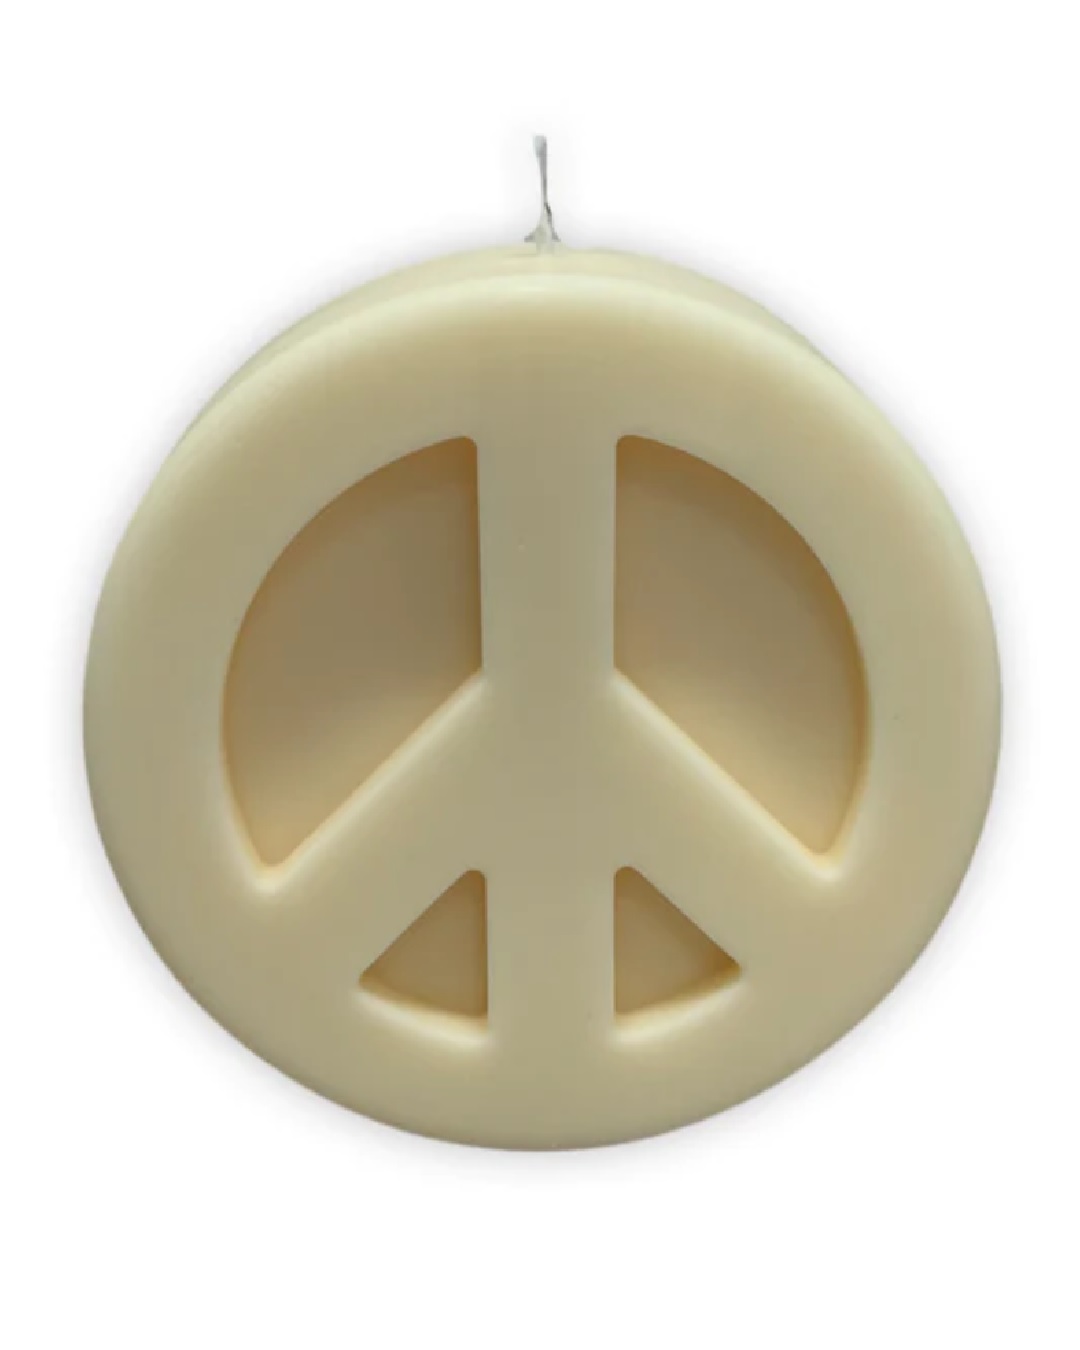 Peace candle